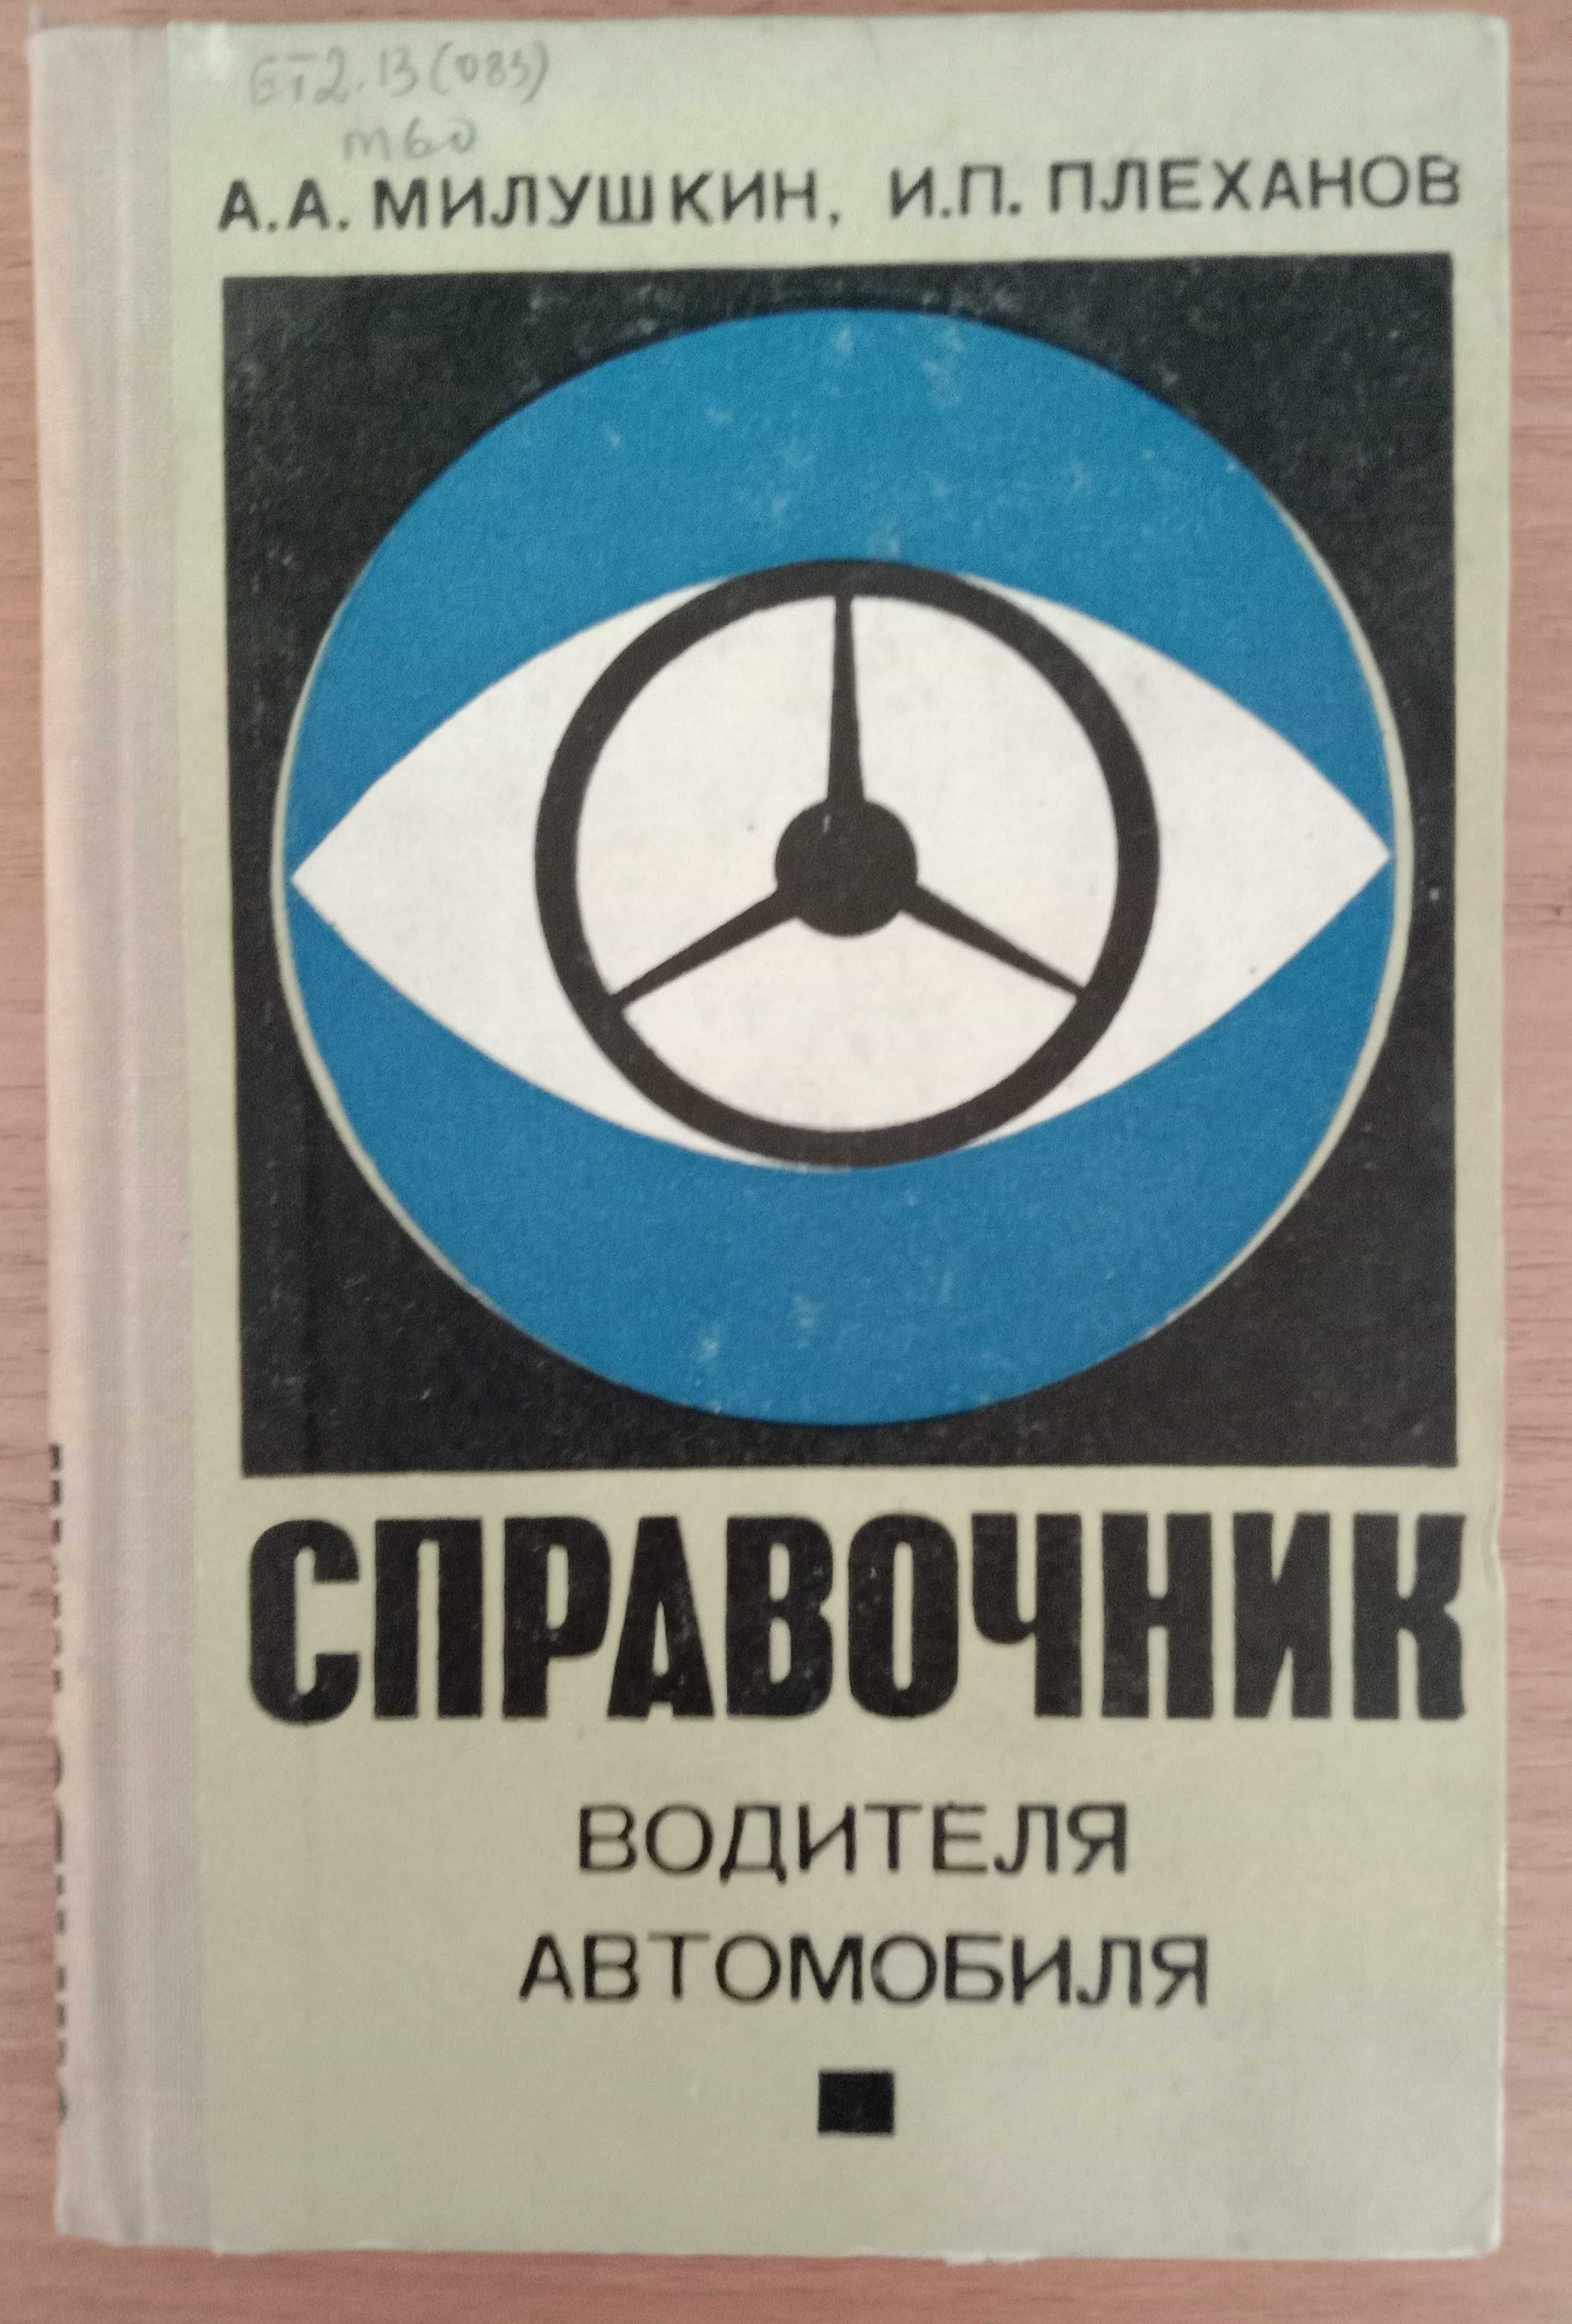 Книга «Справочник ВОДИТЕЛЯ АВТОМОБИЛЯ» Авторы Милушкин, Плеханов. 1968